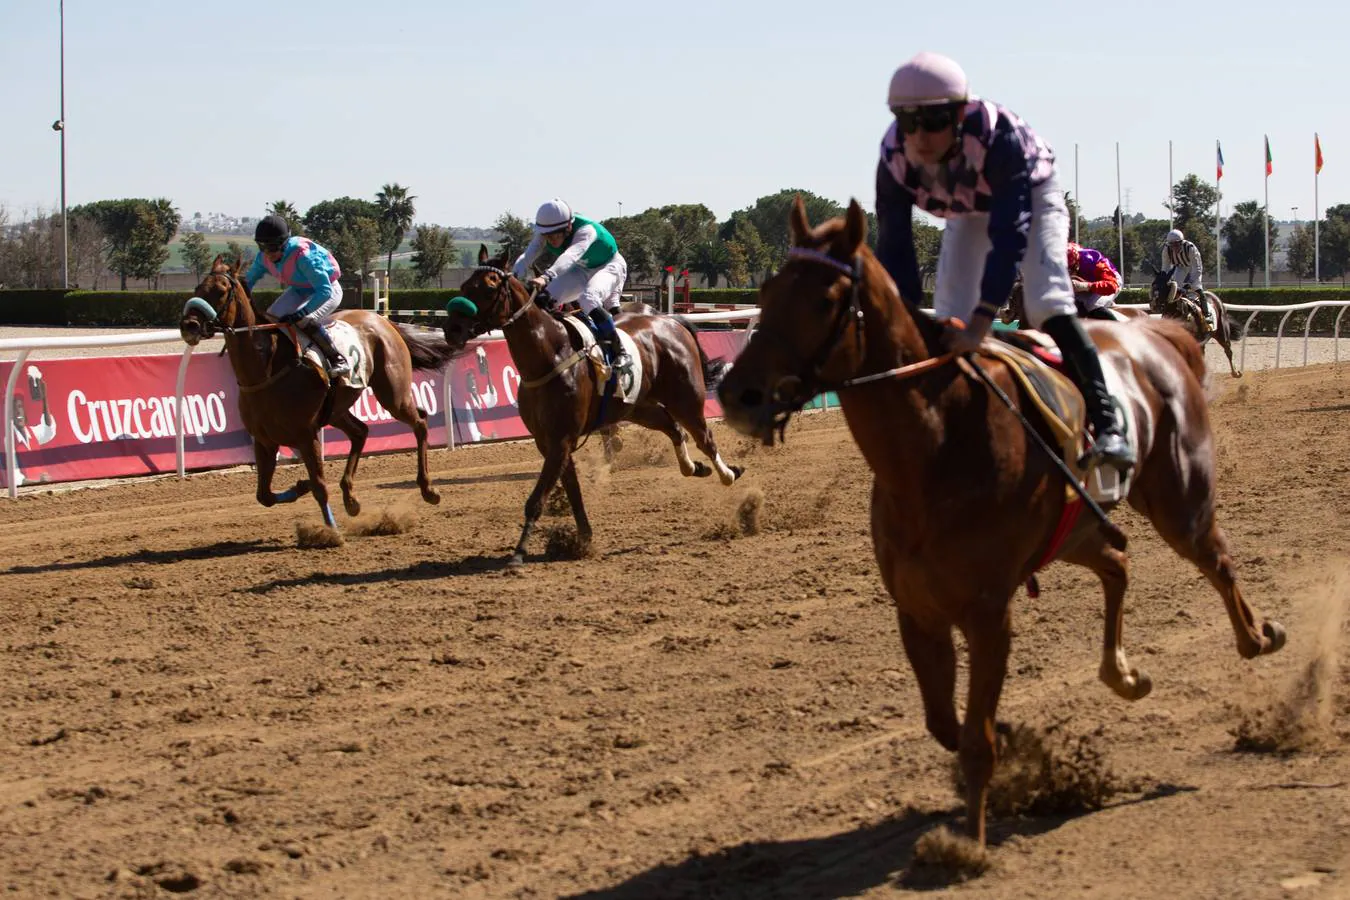 En imágenes, una nueva edición de las carreras de caballos del Club Pineda